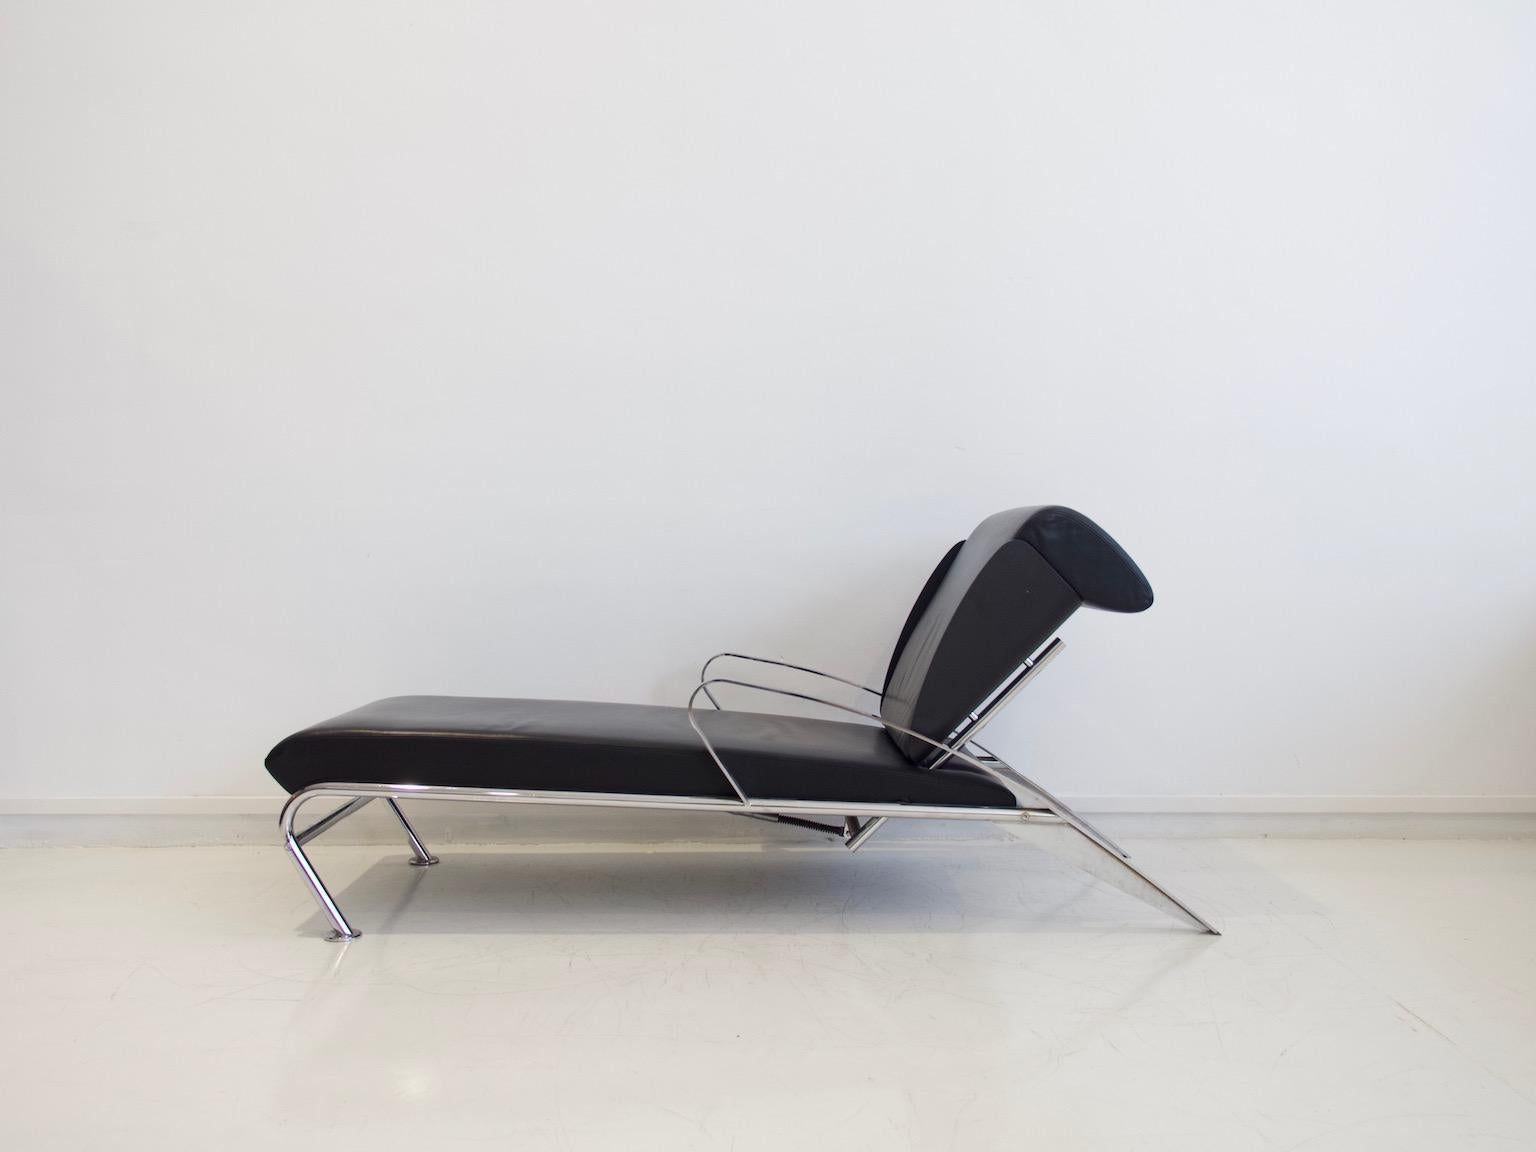 Chaise Lounge, entworfen von Massimo Iosa Ghini (geb. 1959) und hergestellt von Moroso, italienisches Design der 1980er Jahre. Verstellbare Konstruktion aus verchromtem Flach- und Rundstahl. Schale aus schwarz lackiertem Formsperrholz und Bezüge aus